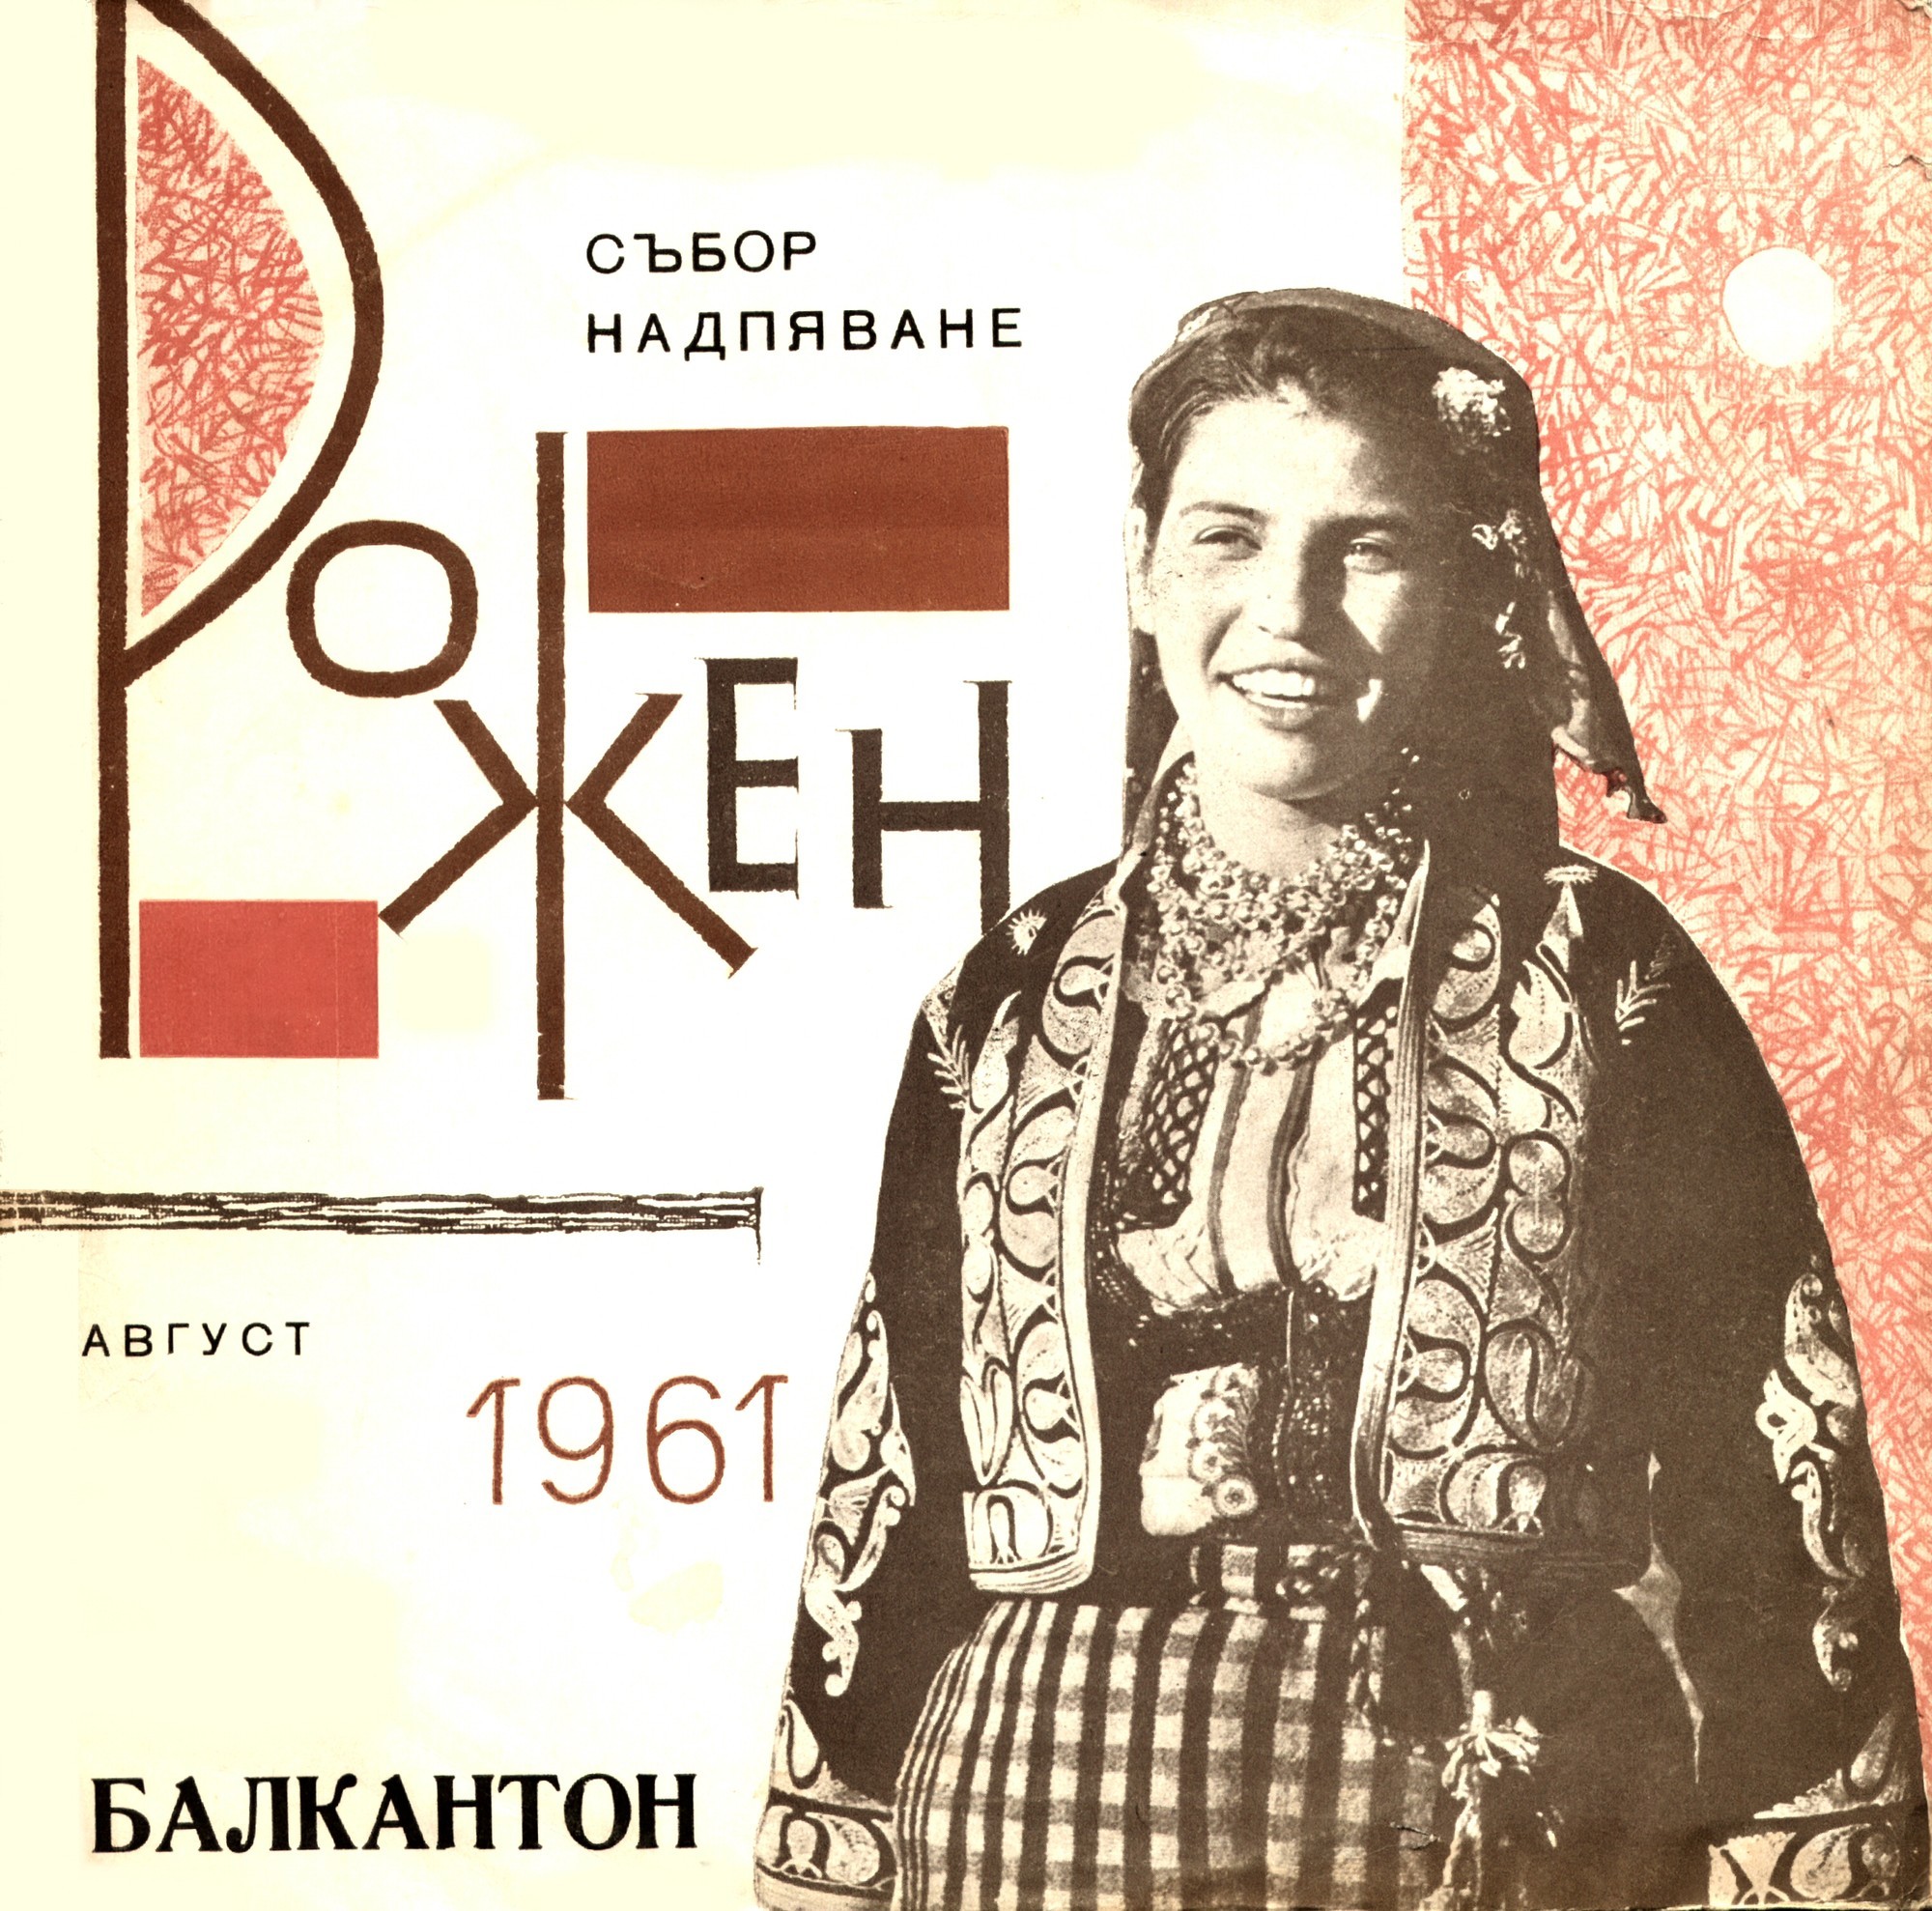 Песни от събора-надпяване в Рожен - Родопите, посветен на родопската песен, проведен през м. август 1961.